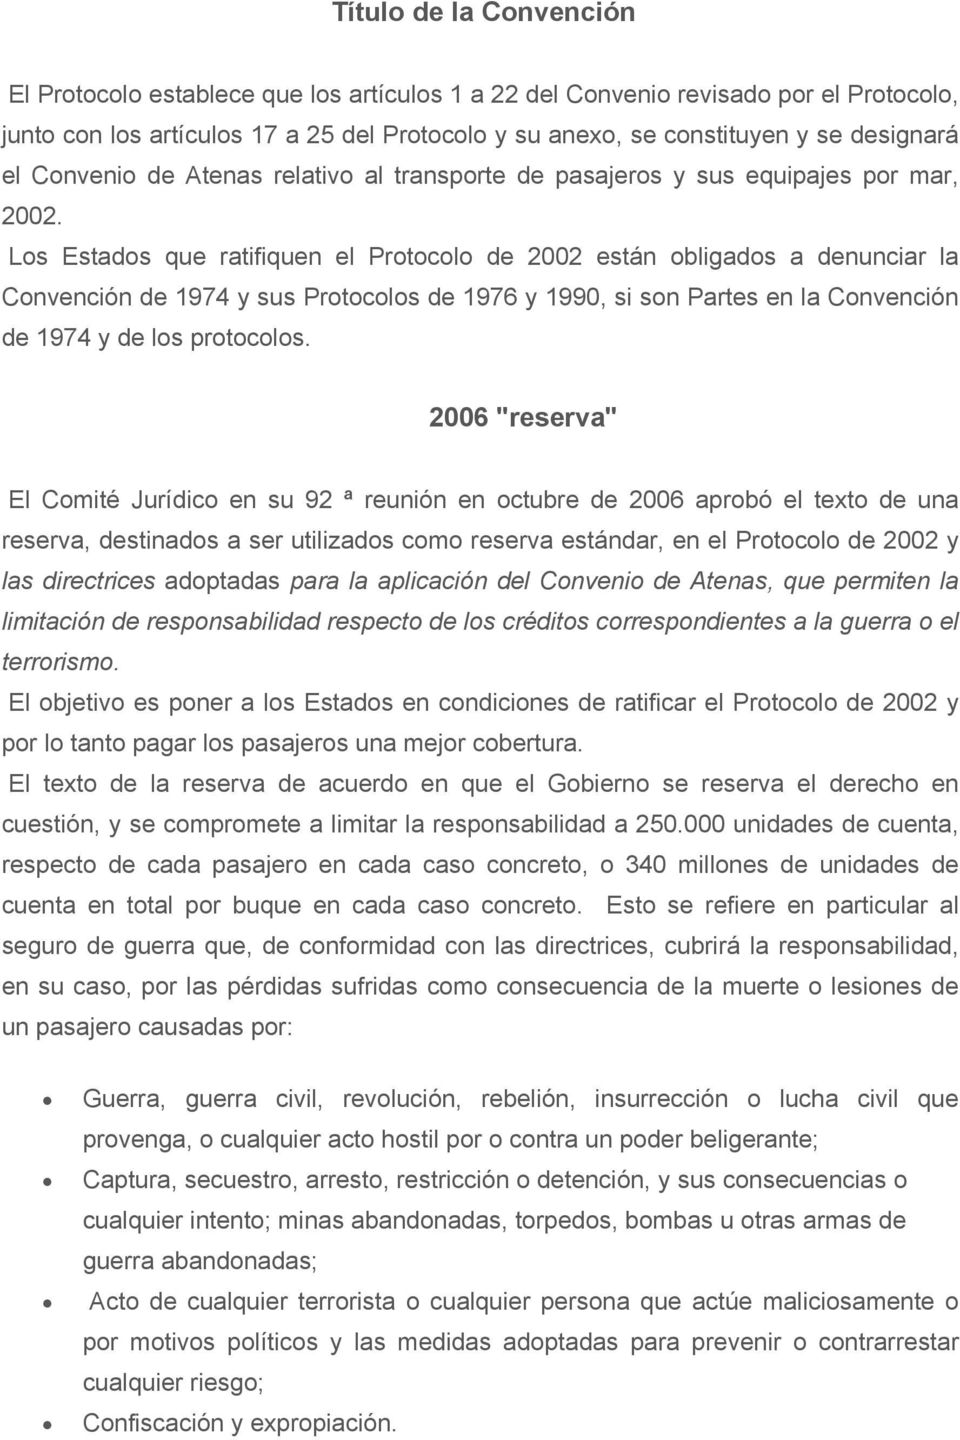 Los Estados que ratifiquen el Protocolo de 2002 están obligados a denunciar la Convención de 1974 y sus Protocolos de 1976 y 1990, si son Partes en la Convención de 1974 y de los protocolos.